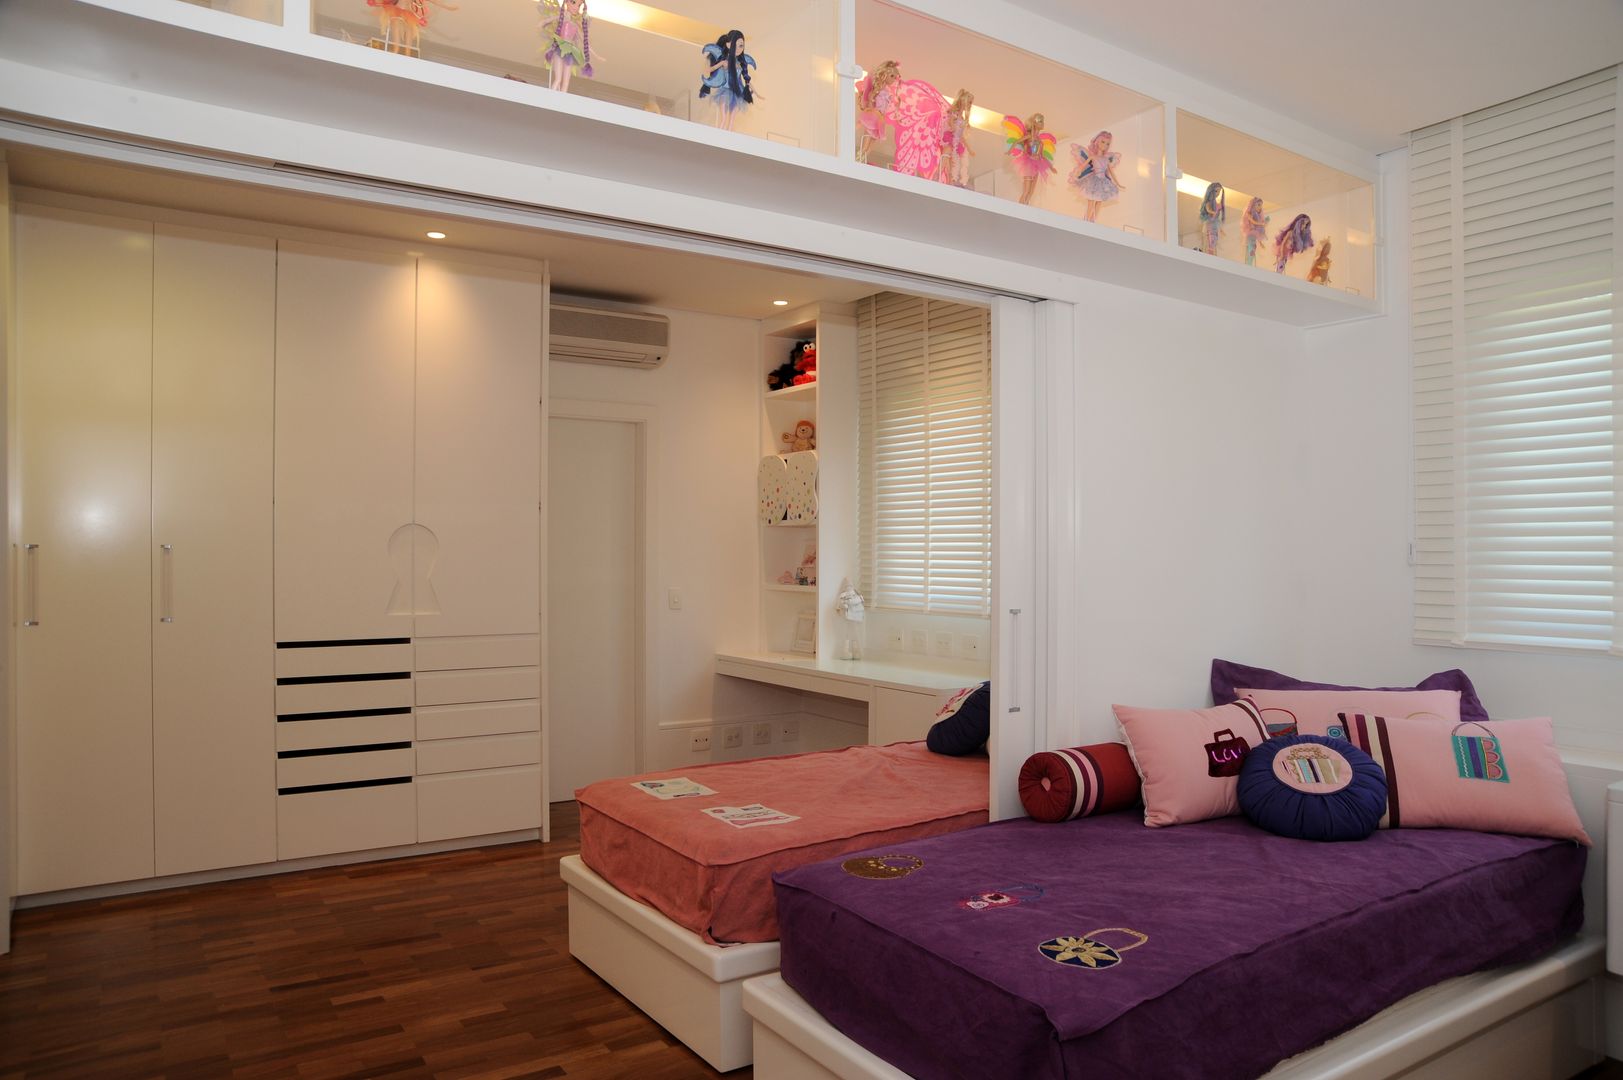 Apartamento Alto de Pinheiros (villa lobos): 450m2, Viviane Dinamarco Design de Interiores Viviane Dinamarco Design de Interiores ห้องนอนเด็ก เตียงเด็กและเปลเด็ก